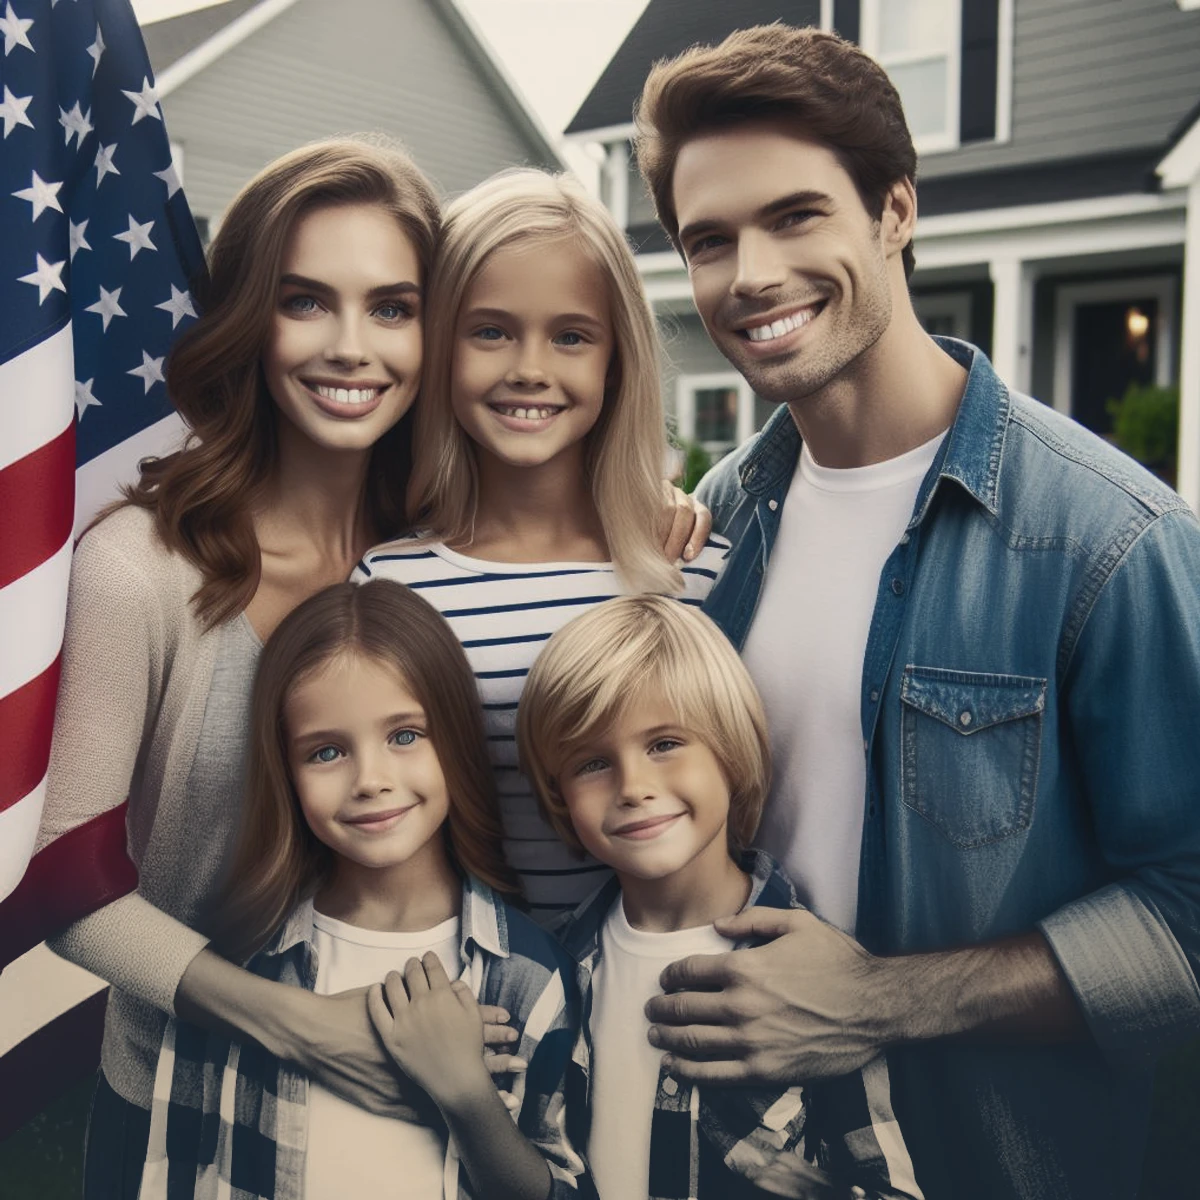 ویزای خانوادگی آمریکا